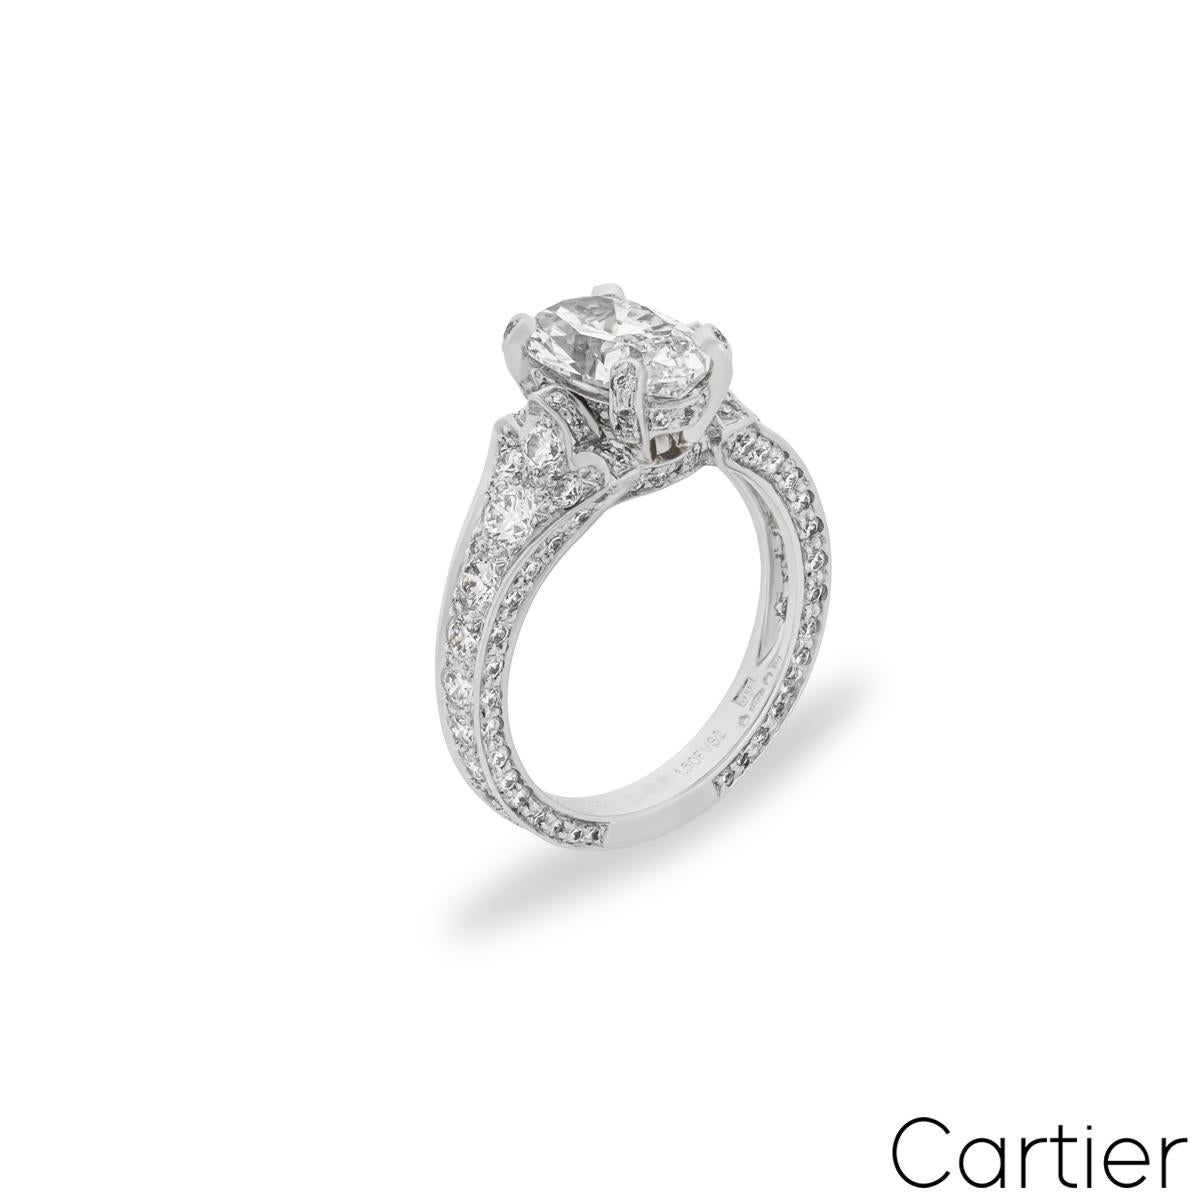 Ein prächtiger Verlobungsring mit Diamanten aus Platin von Cartier aus der Collection'S Camelia. In der Mitte der aufwändig mit Diamanten besetzten vierzackigen Fassung befindet sich ein oval geschliffener Diamant mit einem Gewicht von 1,50ct, Farbe